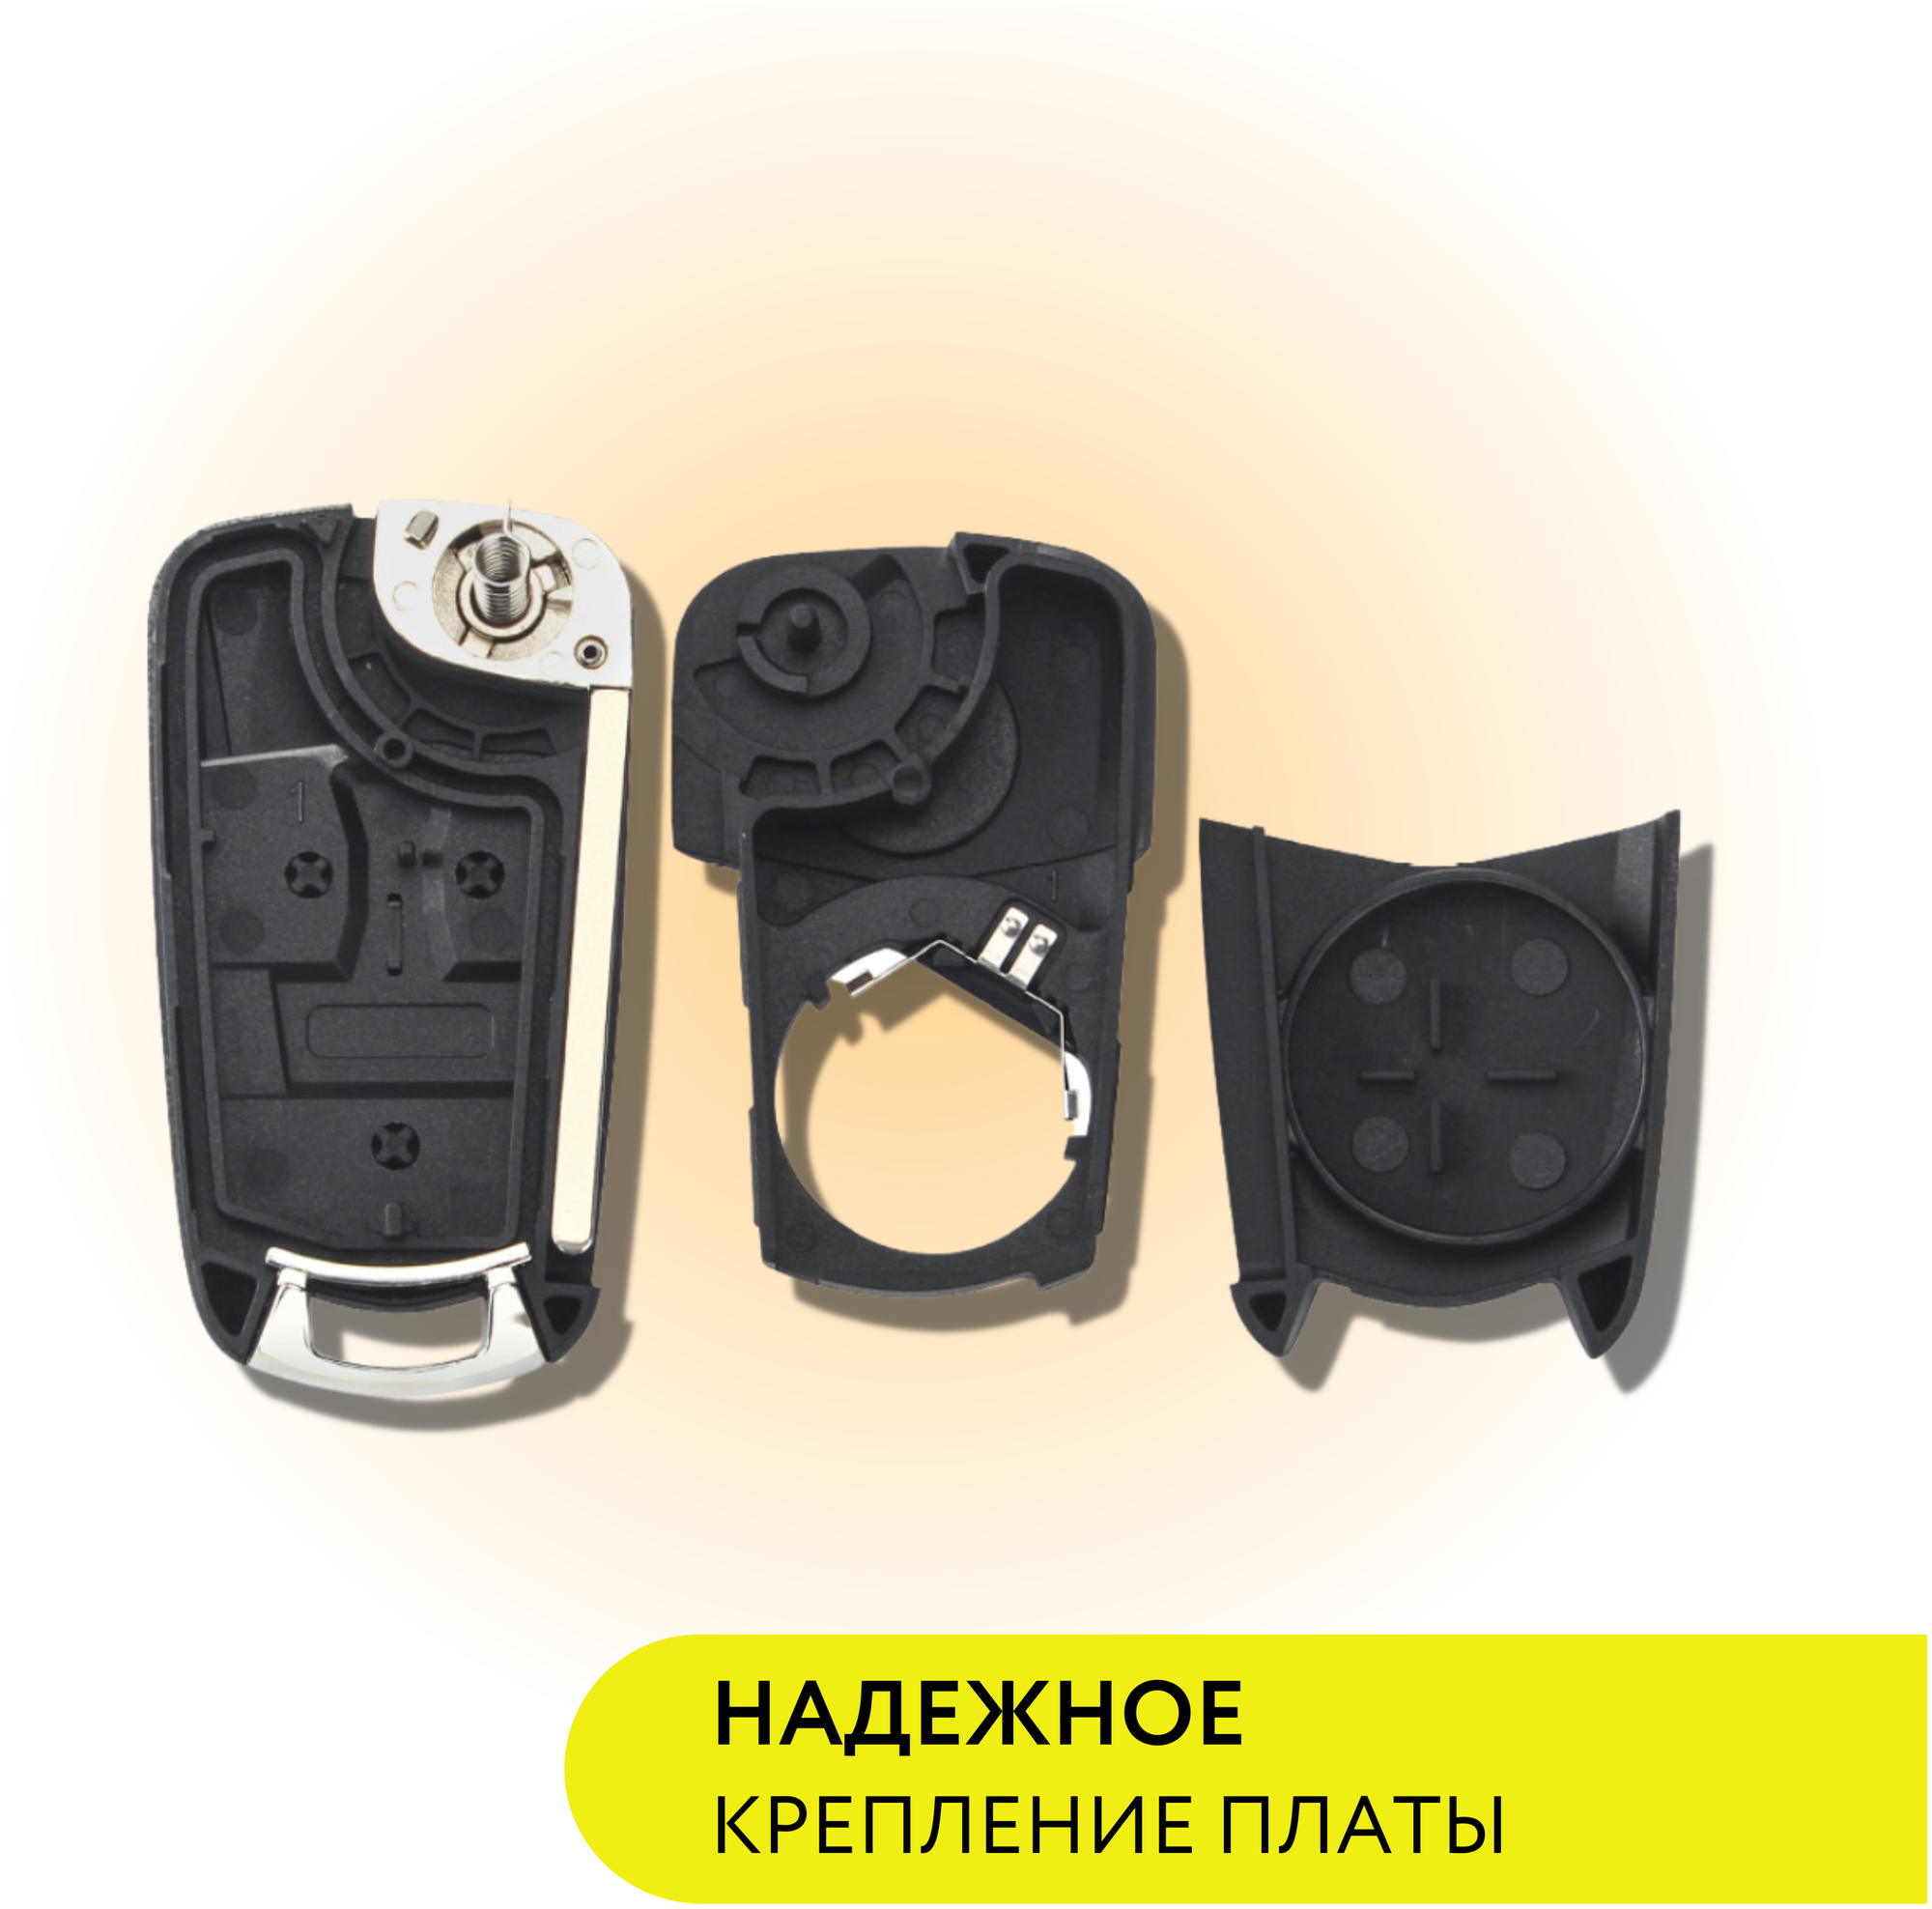 Корпус для ключа зажигания Опель Астра H/ Зафира B, корпус выкидного ключа Opel Astra H/ Zafira B/ Vectra C/ Corsa D, 2 кнопки